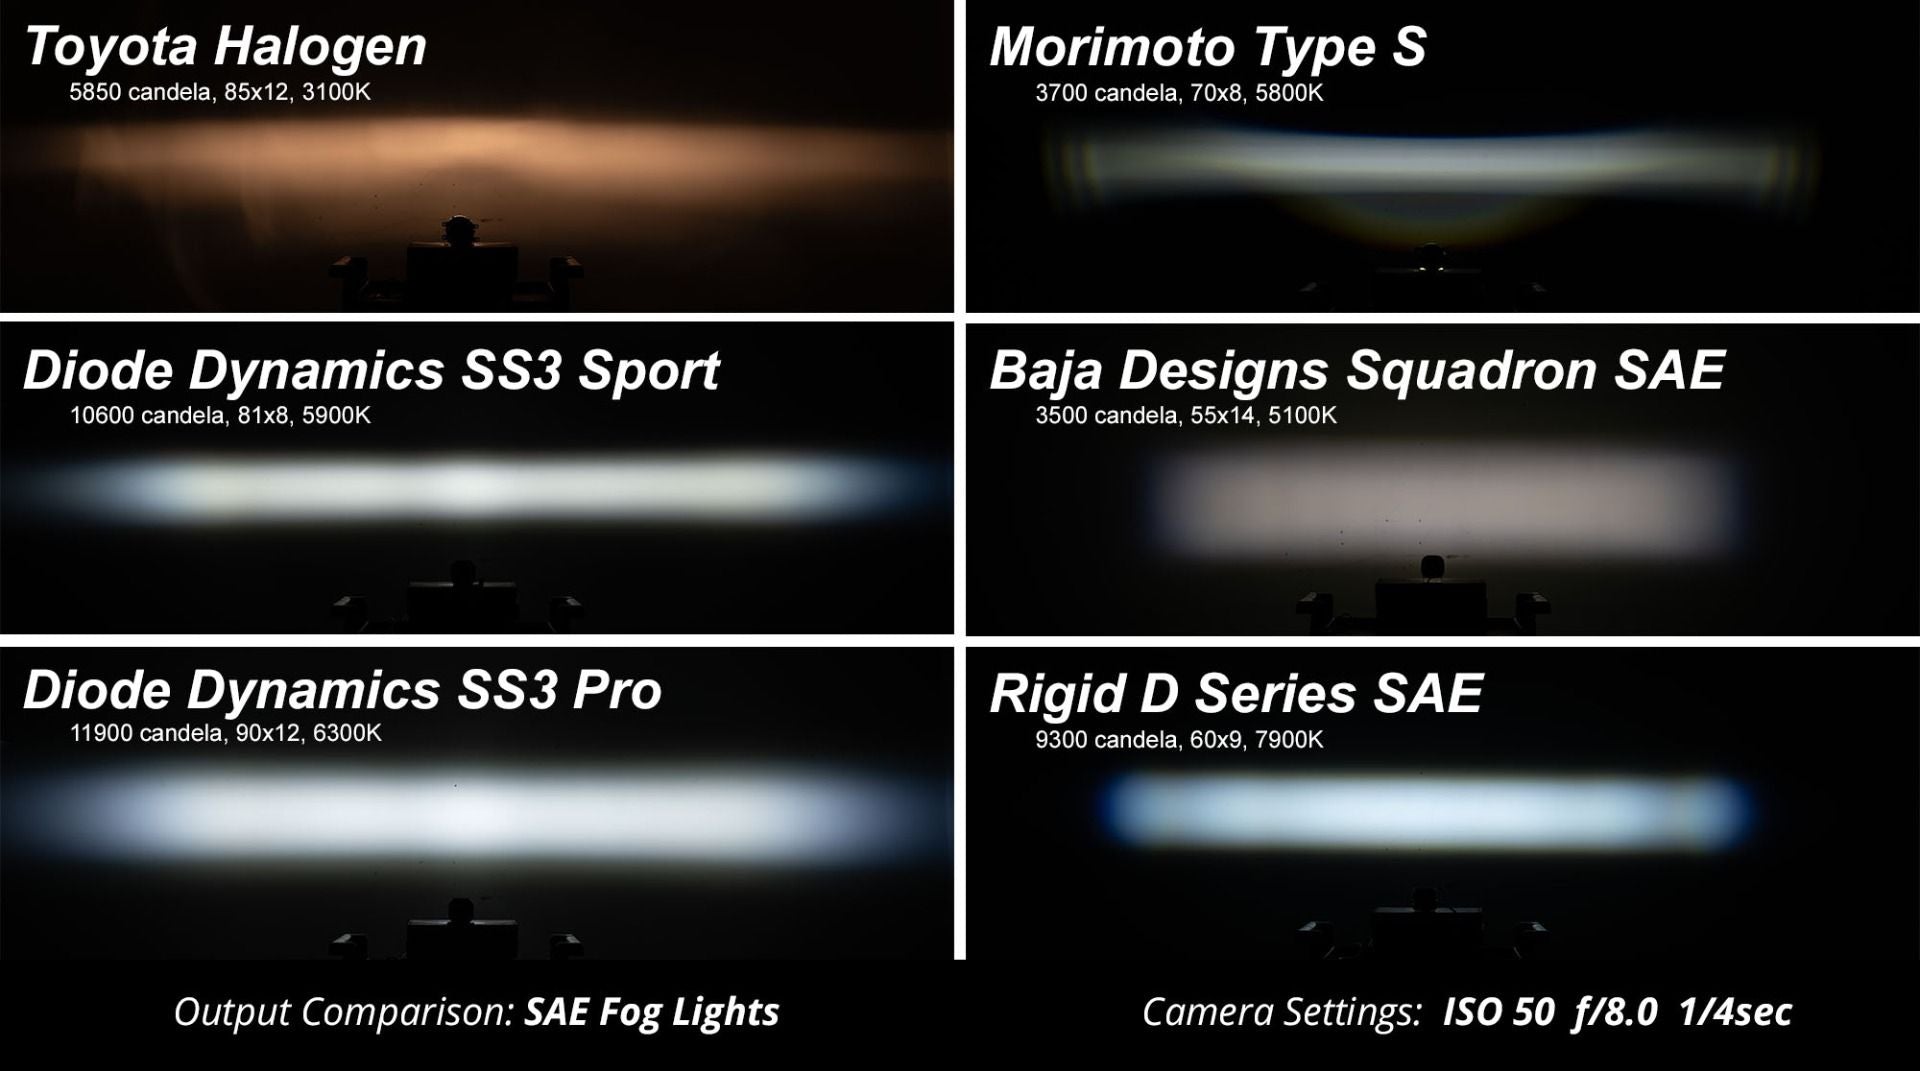 SS3 LED Fog Light Kit for 2016-2018 Chevrolet Silverado 1500 Diode Dynamics-